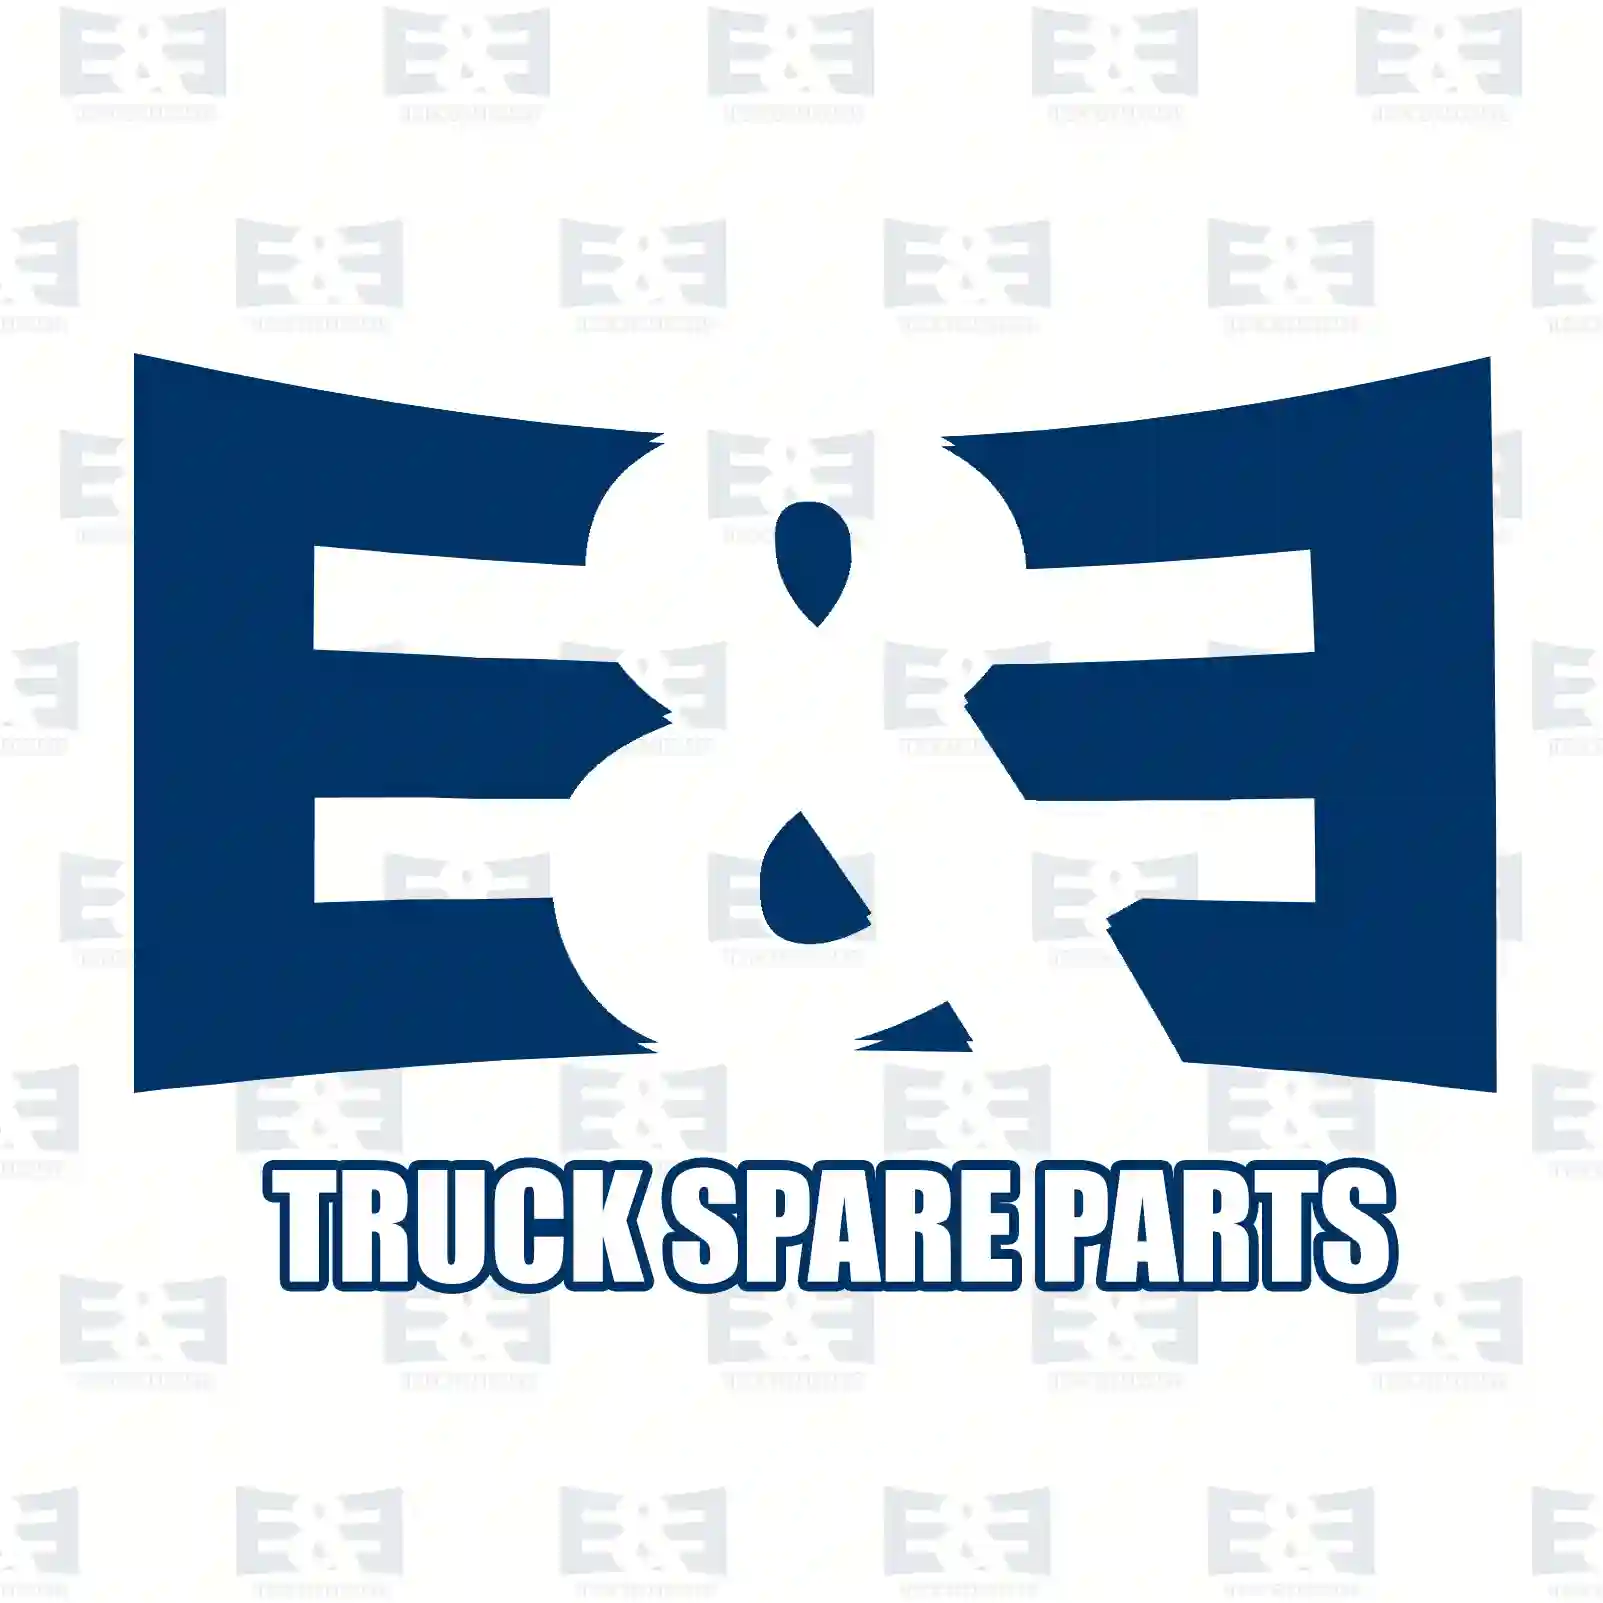 Boot, 2E2200690, 334540, 338395, ZG00277-0008 ||  2E2200690 E&E Truck Spare Parts | Truck Spare Parts, Auotomotive Spare Parts Boot, 2E2200690, 334540, 338395, ZG00277-0008 ||  2E2200690 E&E Truck Spare Parts | Truck Spare Parts, Auotomotive Spare Parts